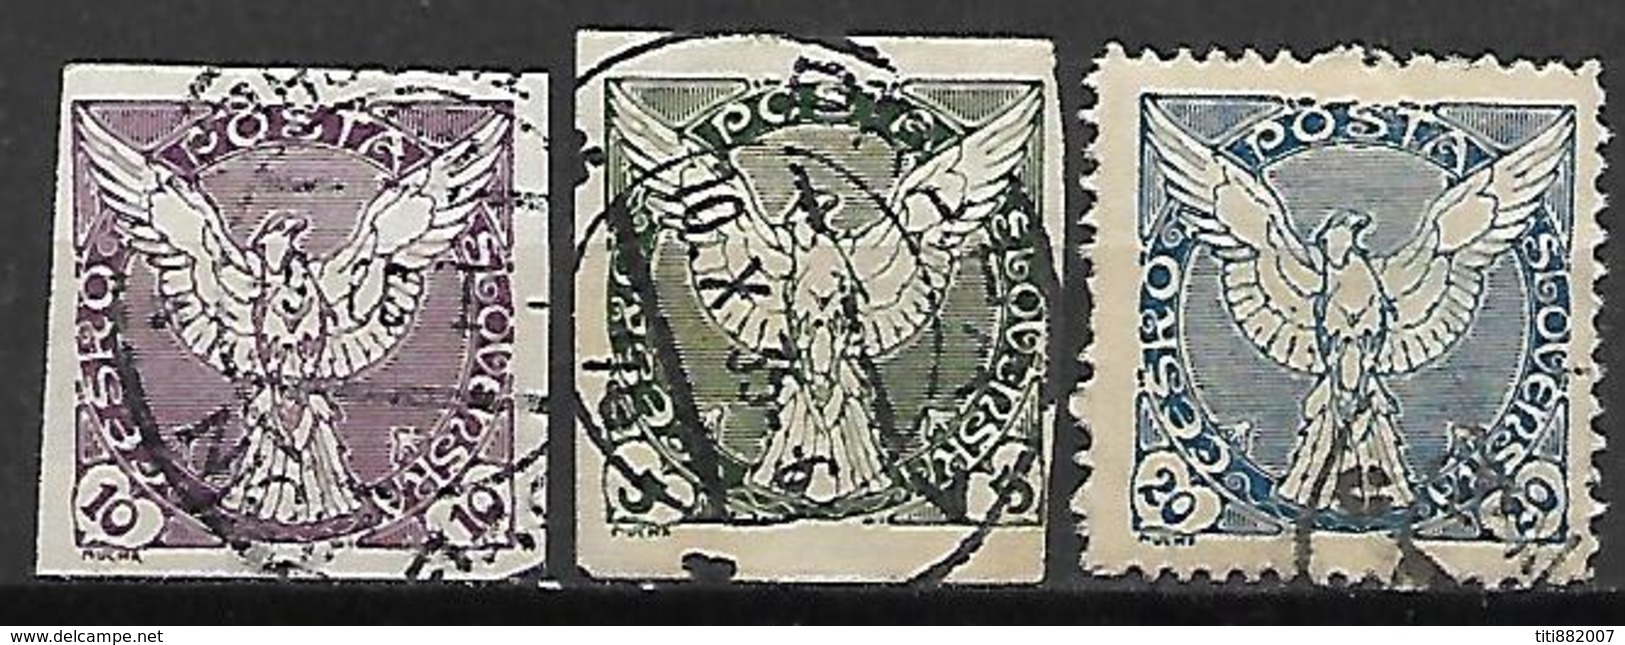 TCHECOSLOVAQUIE   -   1919 .  3 Timbres Pour Journaux Oblitérés.   Colombe De La Paix. - Newspaper Stamps